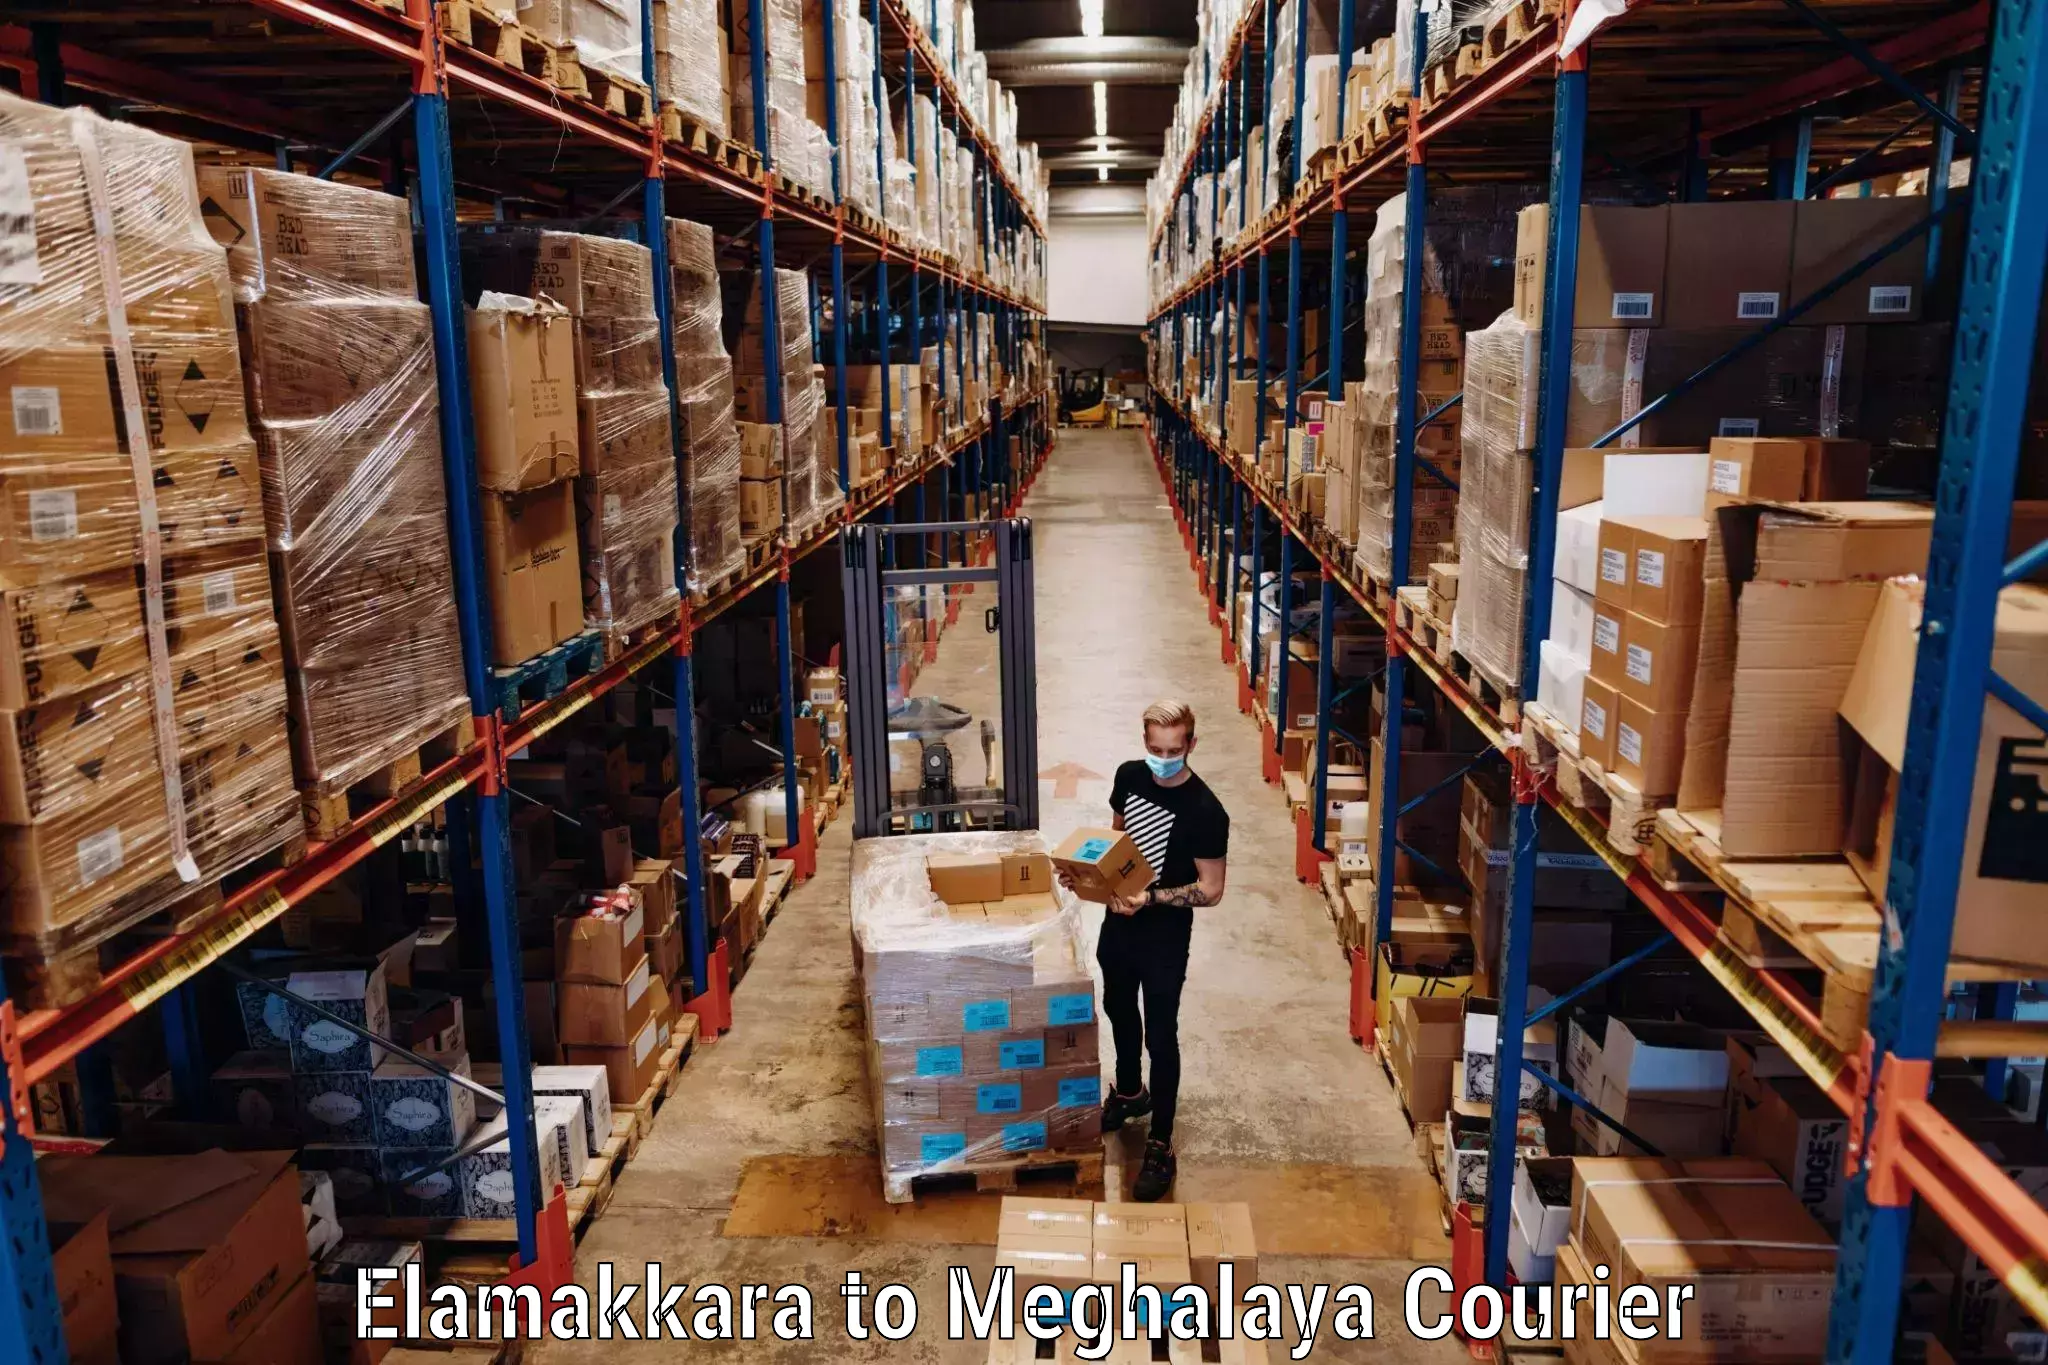 Luggage shipping strategy Elamakkara to Nongpoh